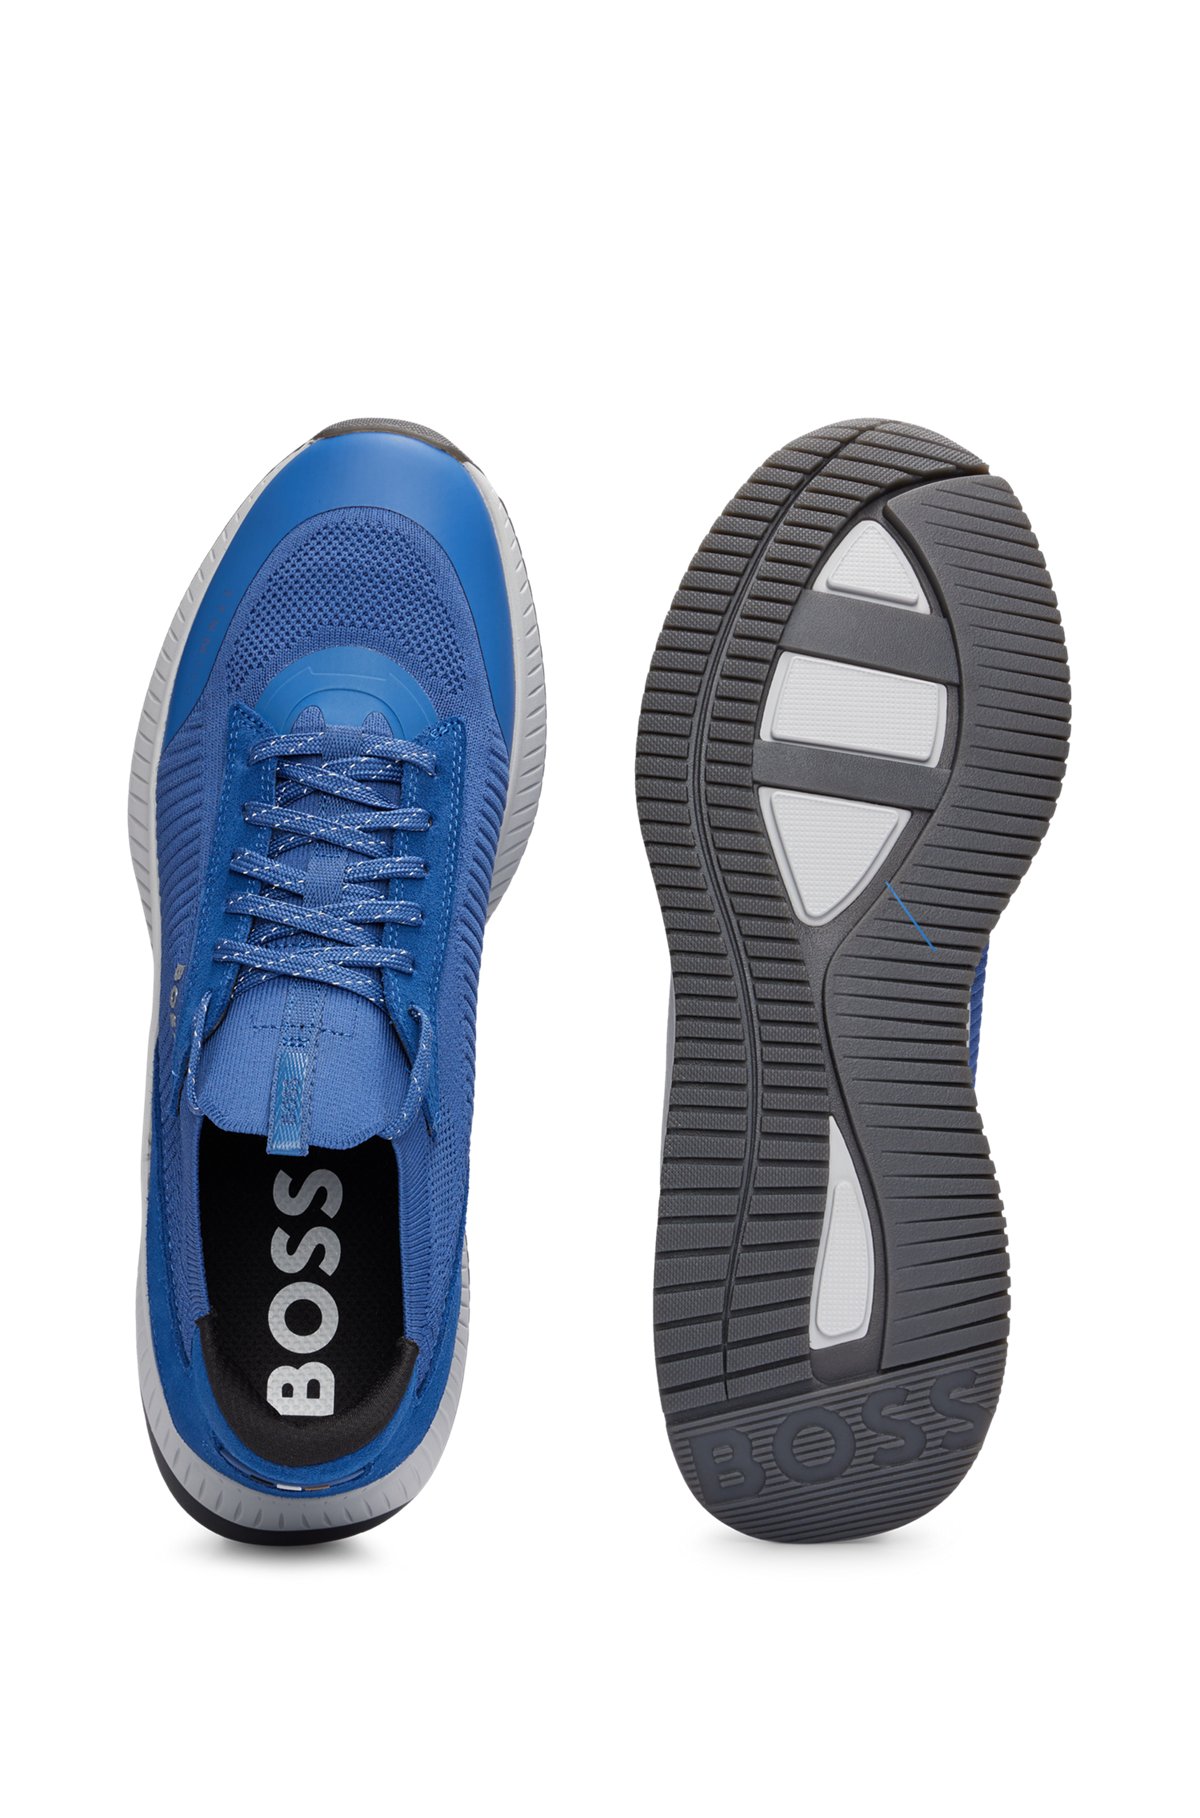 Sock-Sneakers mit gestricktem Obermaterial und Fischgrät-Sohle, Blau